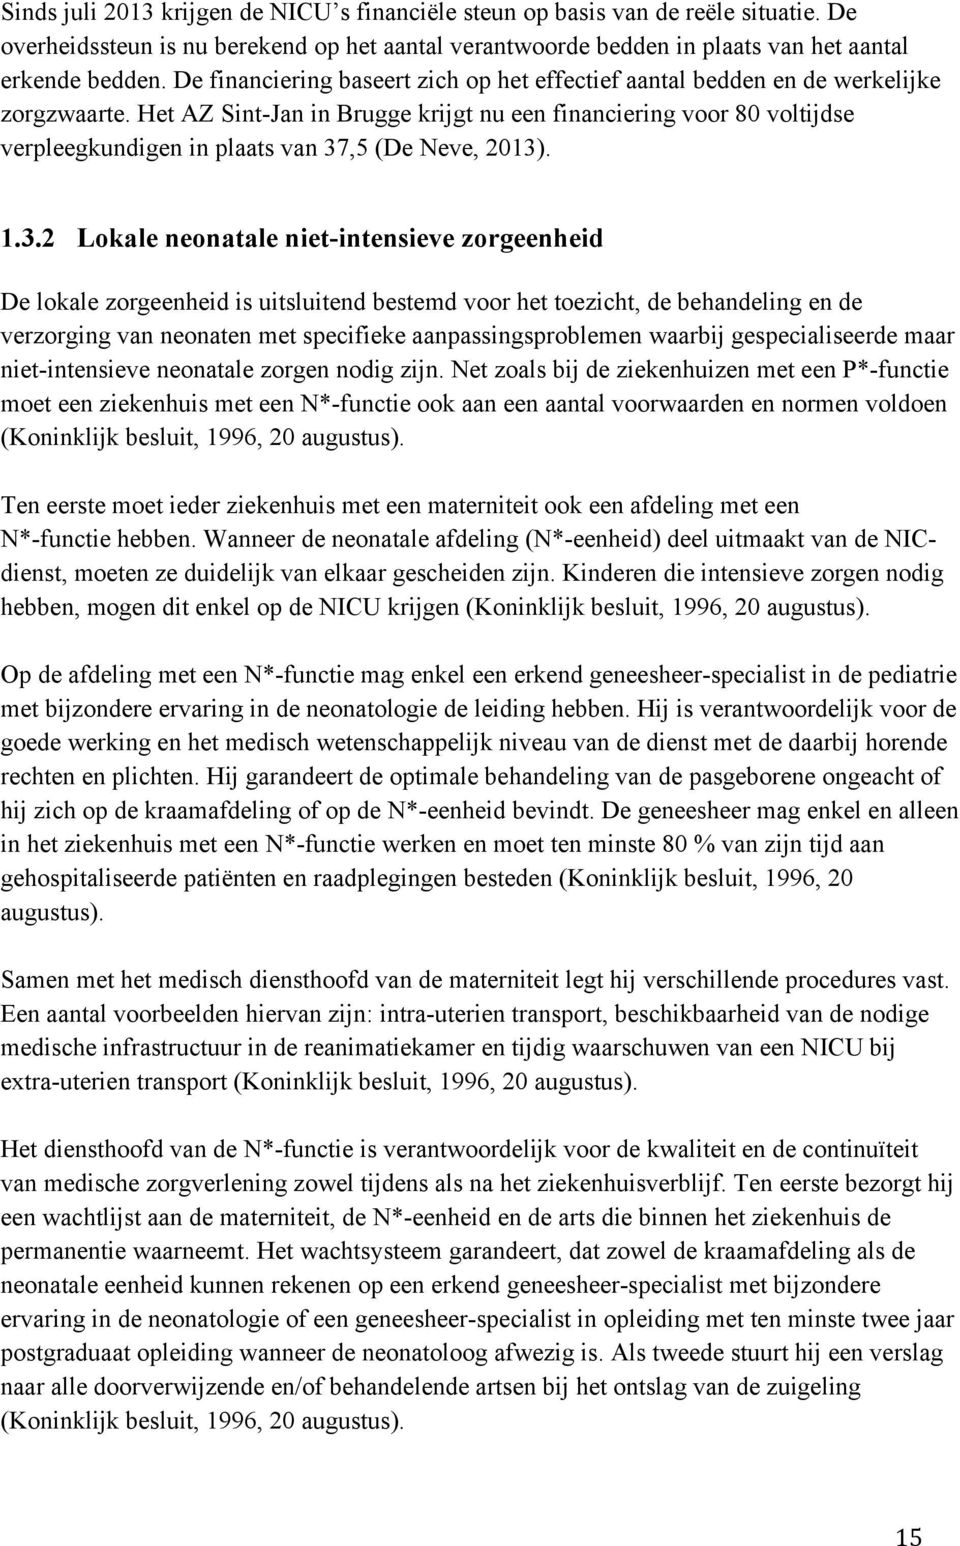 Het AZ Sint-Jan in Brugge krijgt nu een financiering voor 80 voltijdse verpleegkundigen in plaats van 37